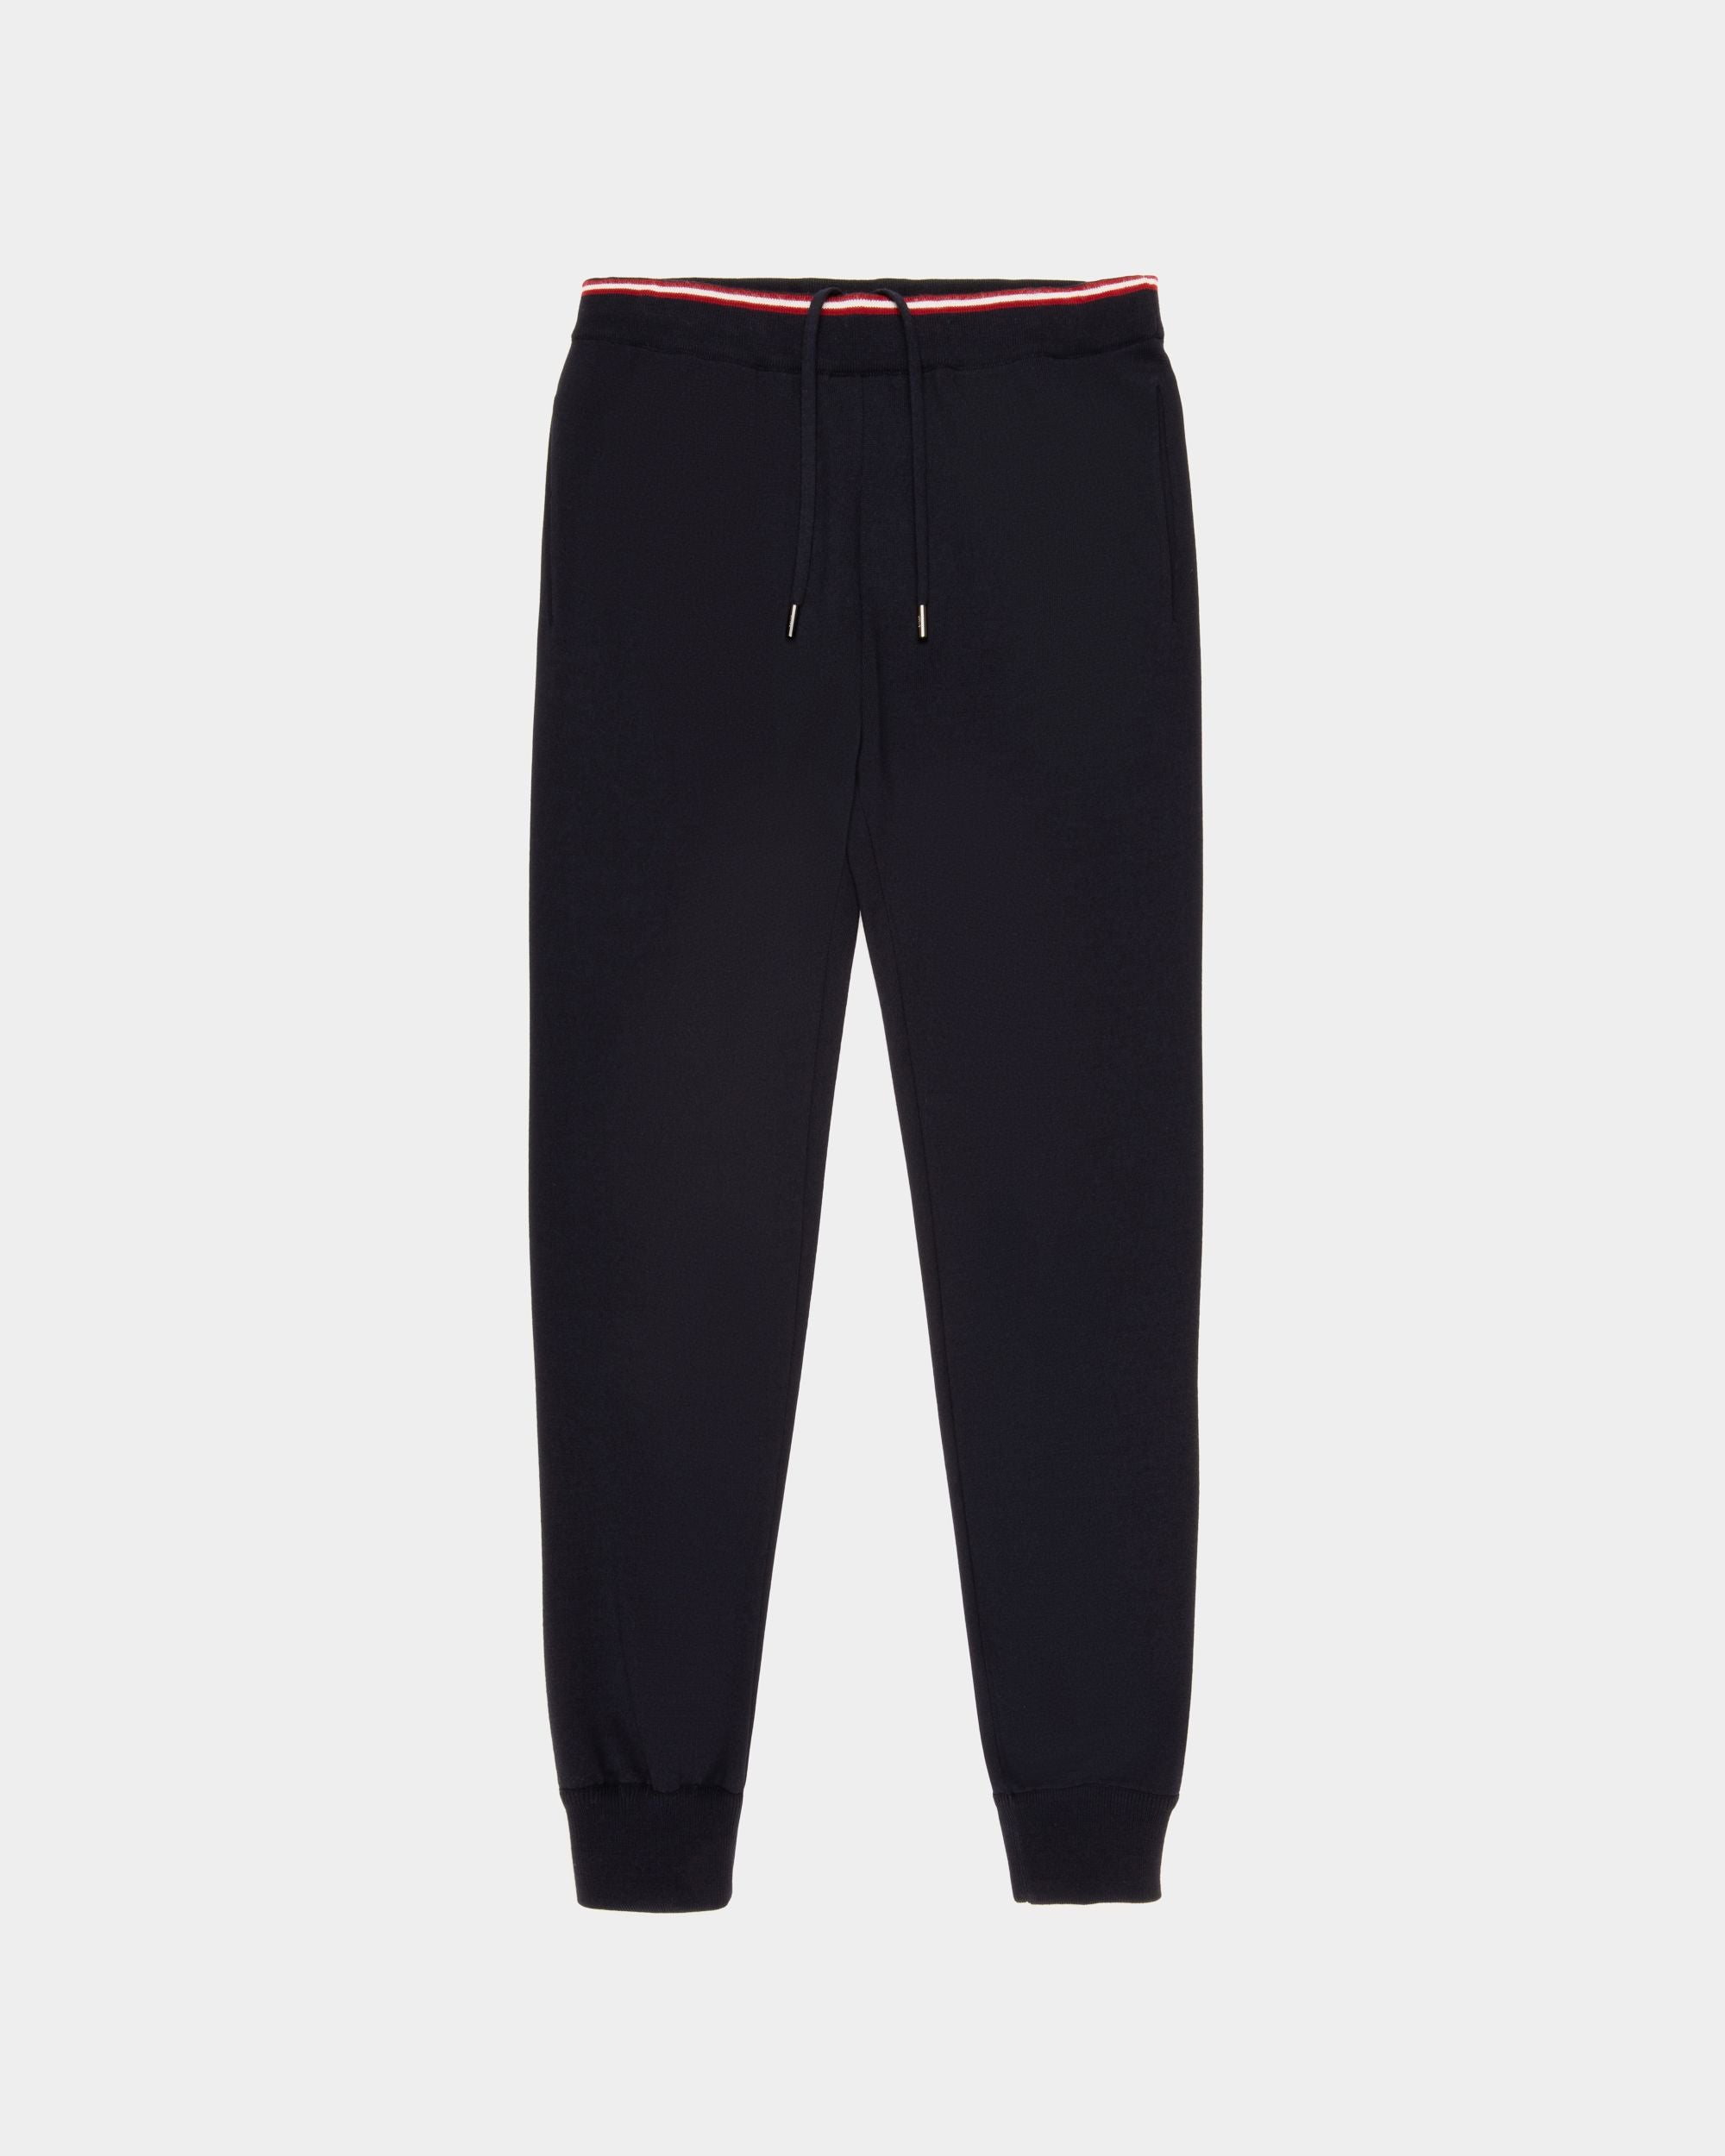 Men's Designer Trousers: Denim, Sweatpants & Pants | Bally